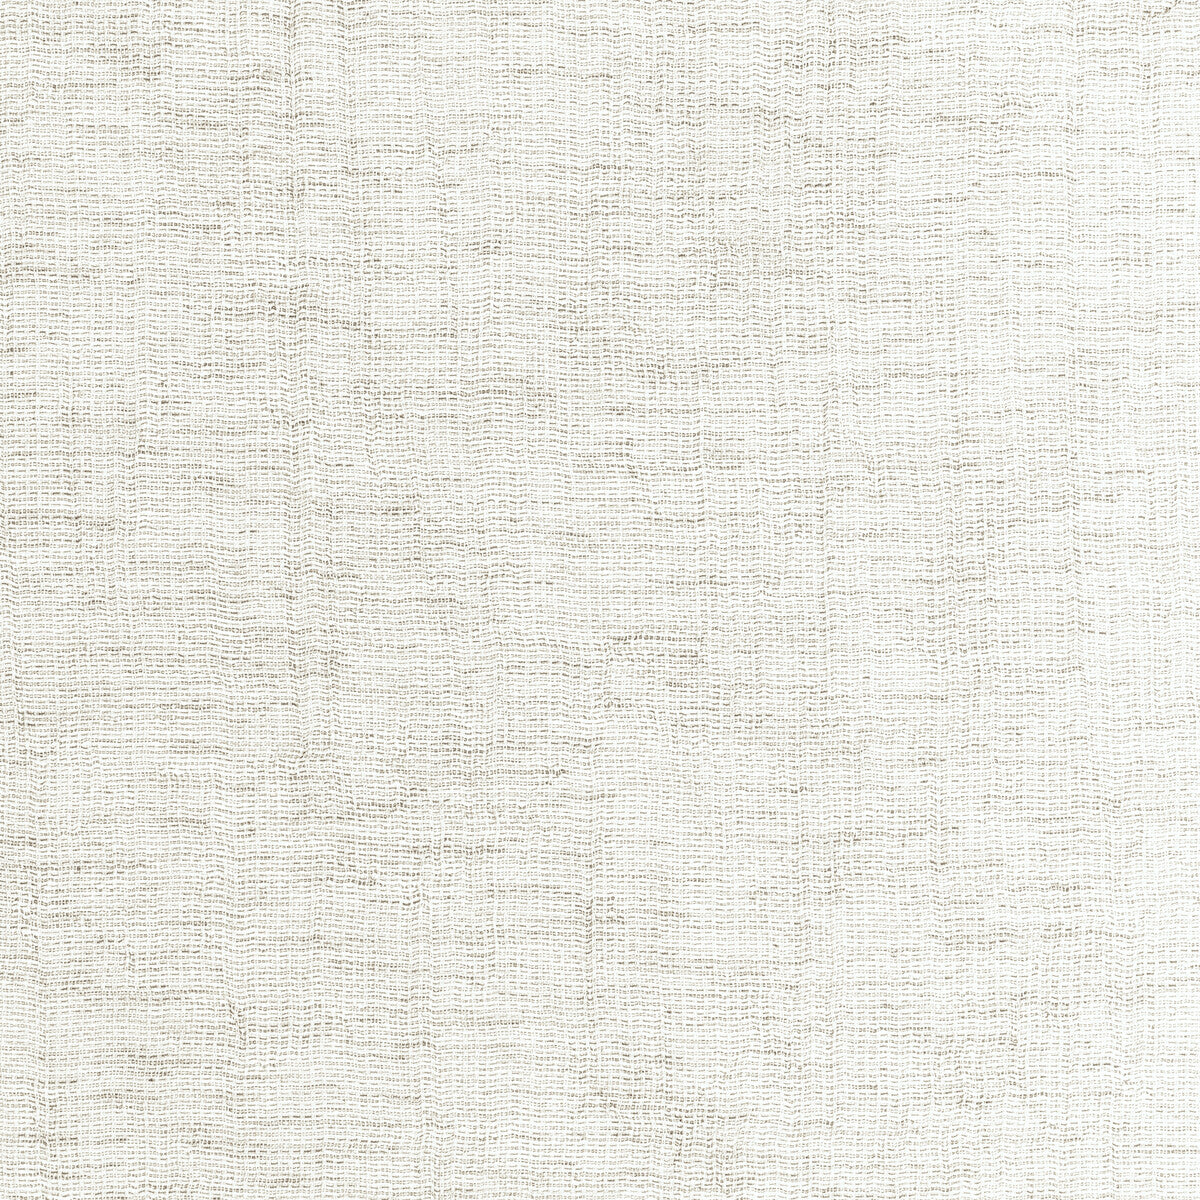 Kravet Basics fabric in 4881-101 color - pattern 4881.101.0 - by Kravet Basics